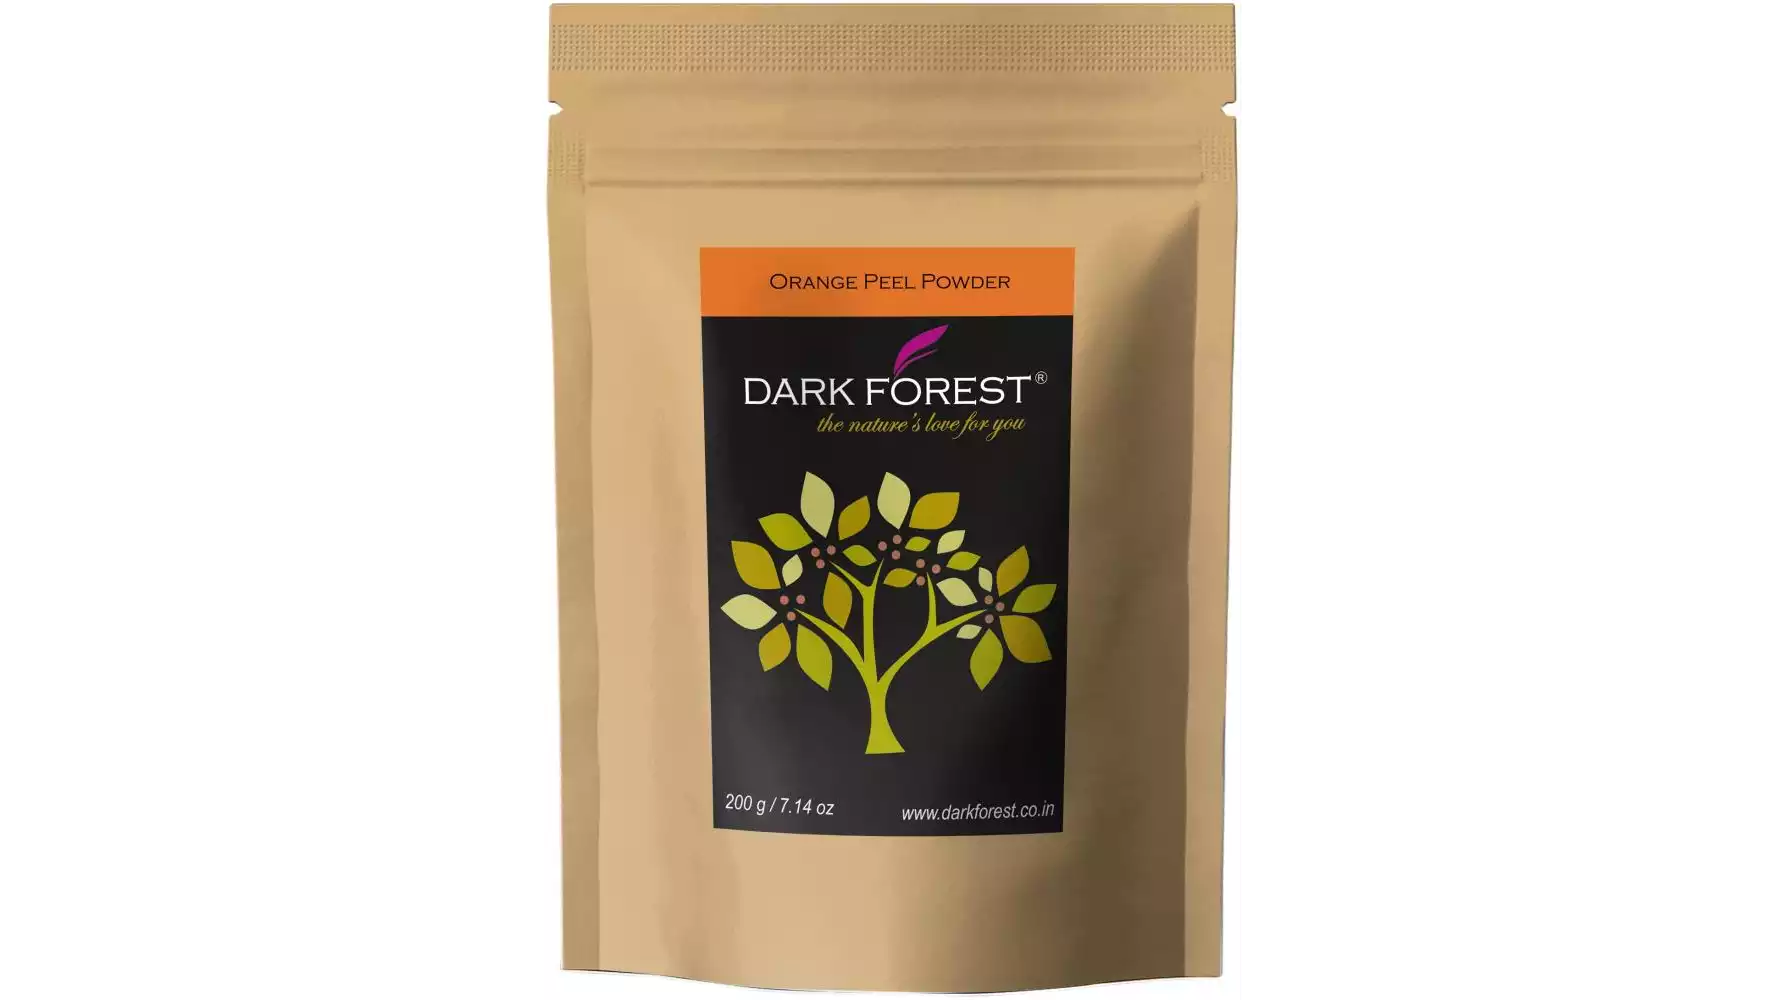 Dark Forest Orange Peel Powder (200g)